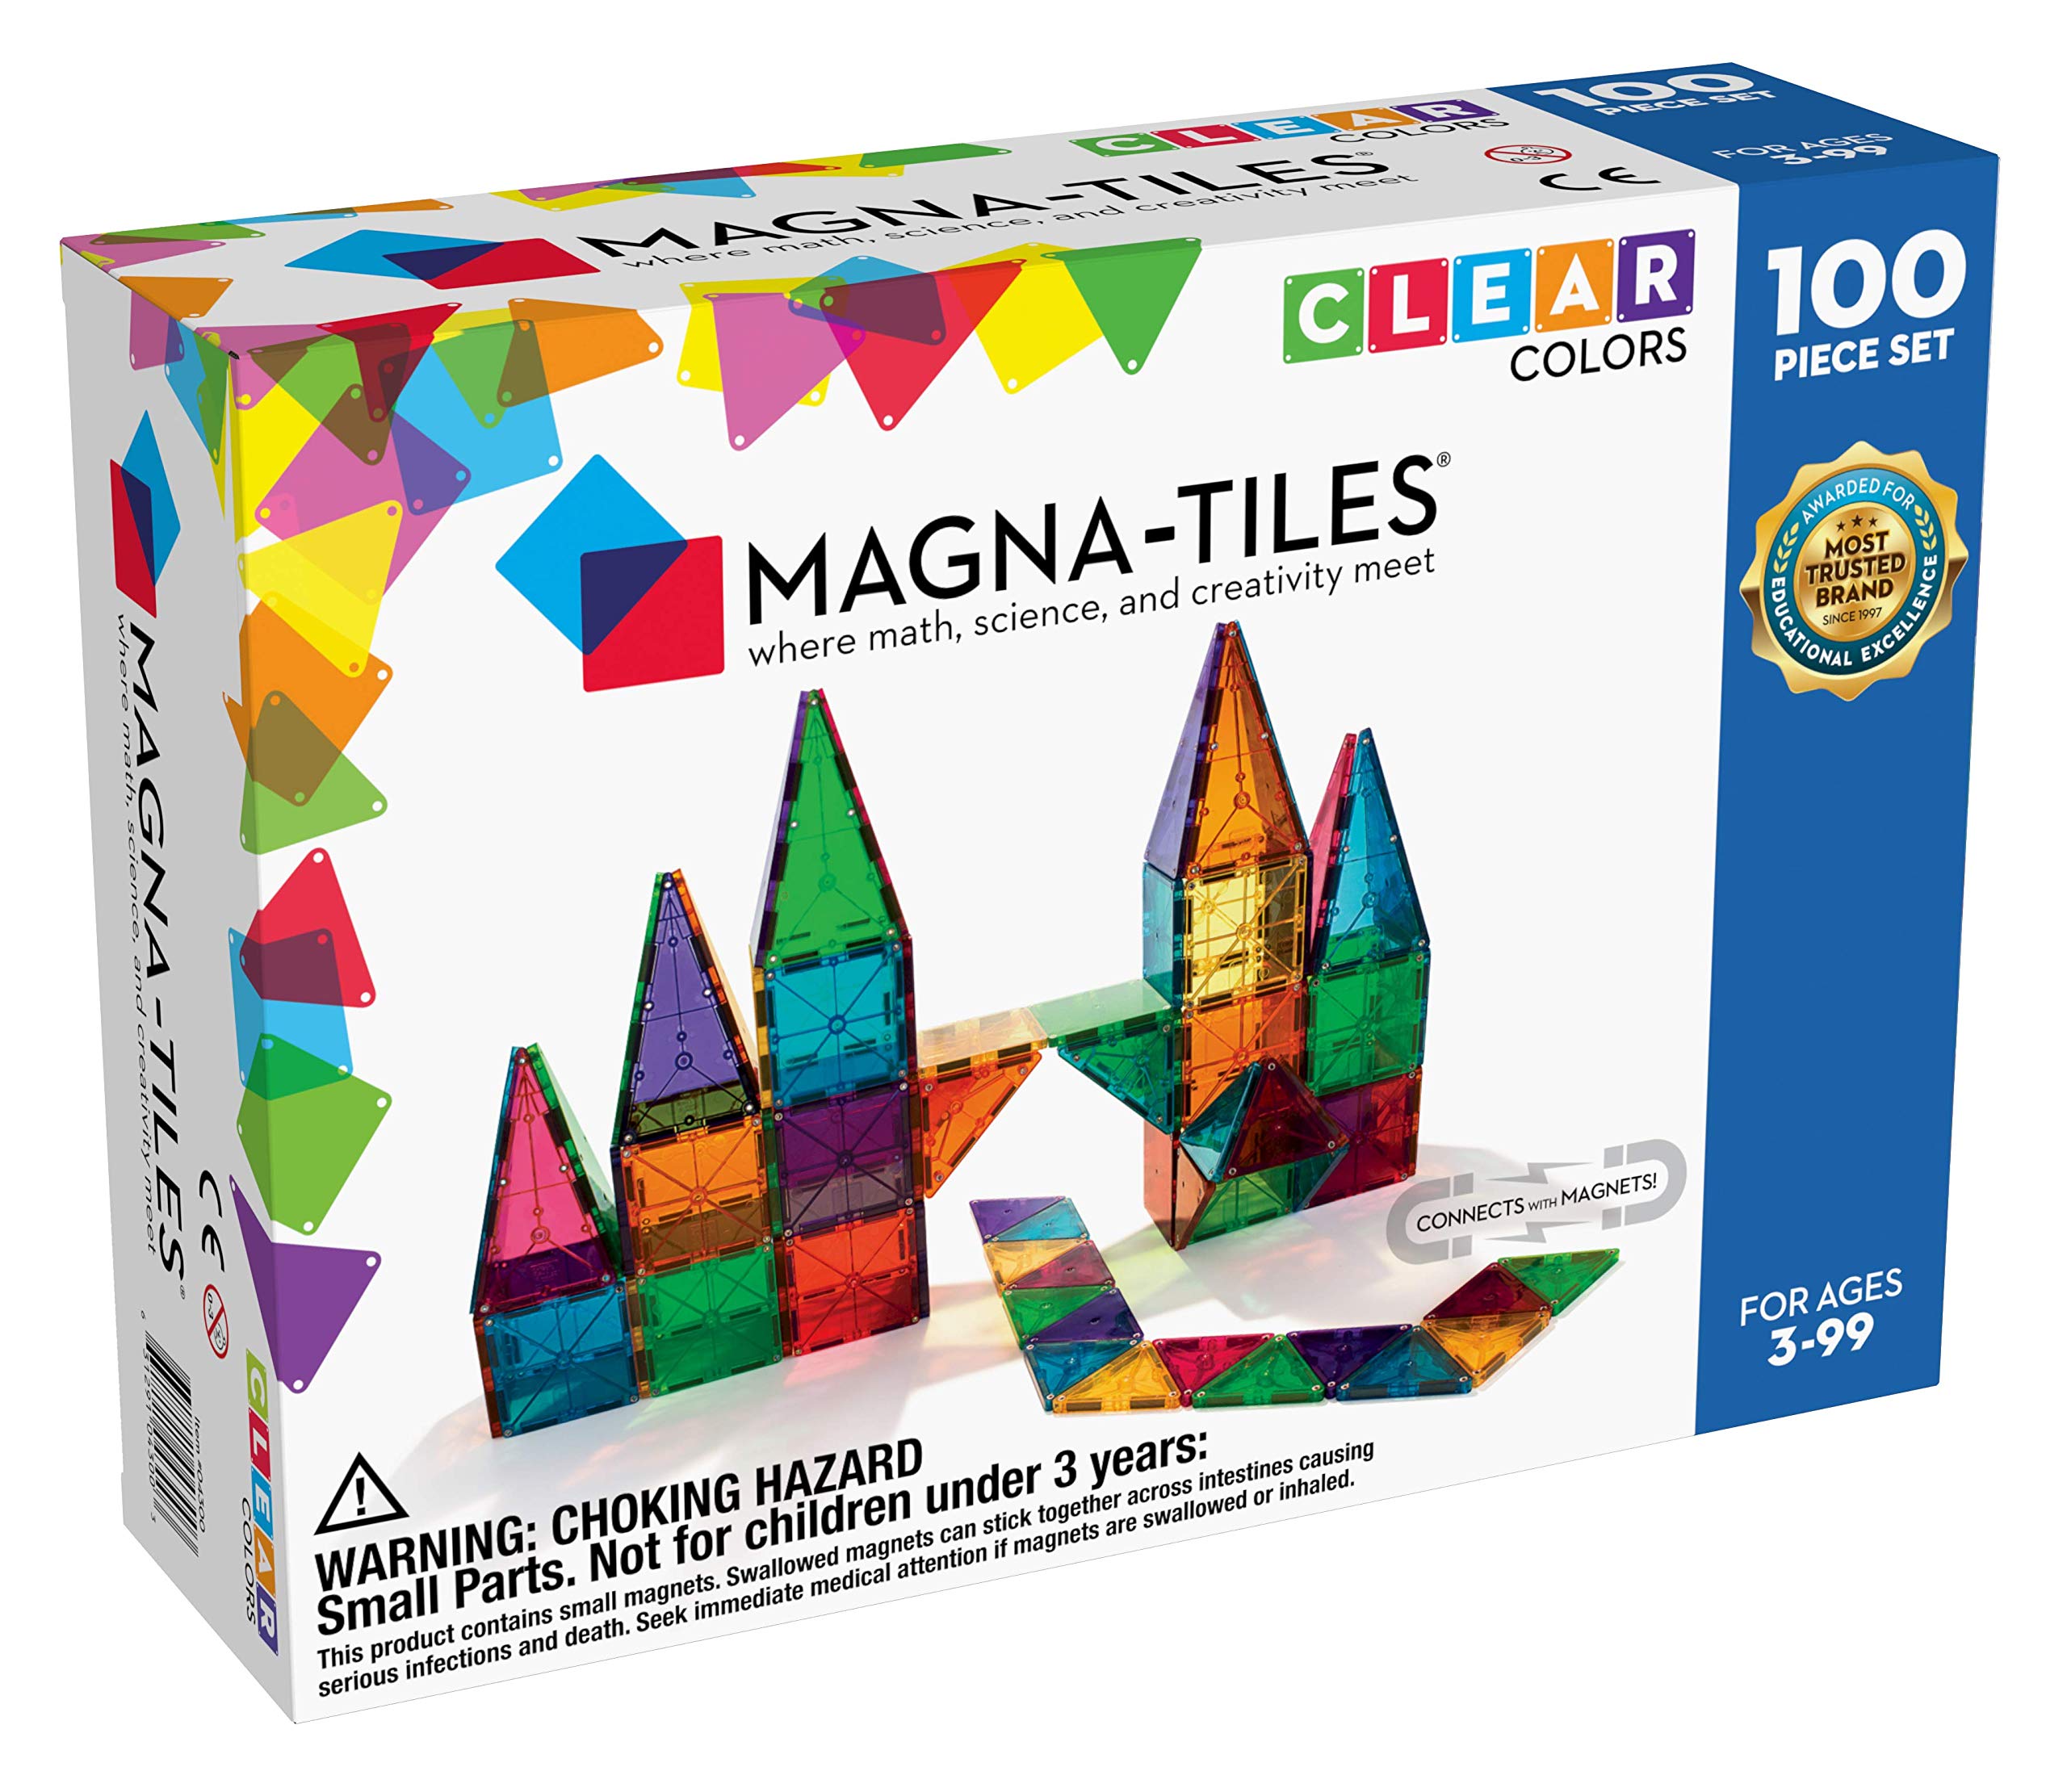 Magna Tiles Magna-Tiles 100 块透明颜色套装，原创磁性积木，适合创意开放式游戏，益智玩具，适合 3 岁以上儿童